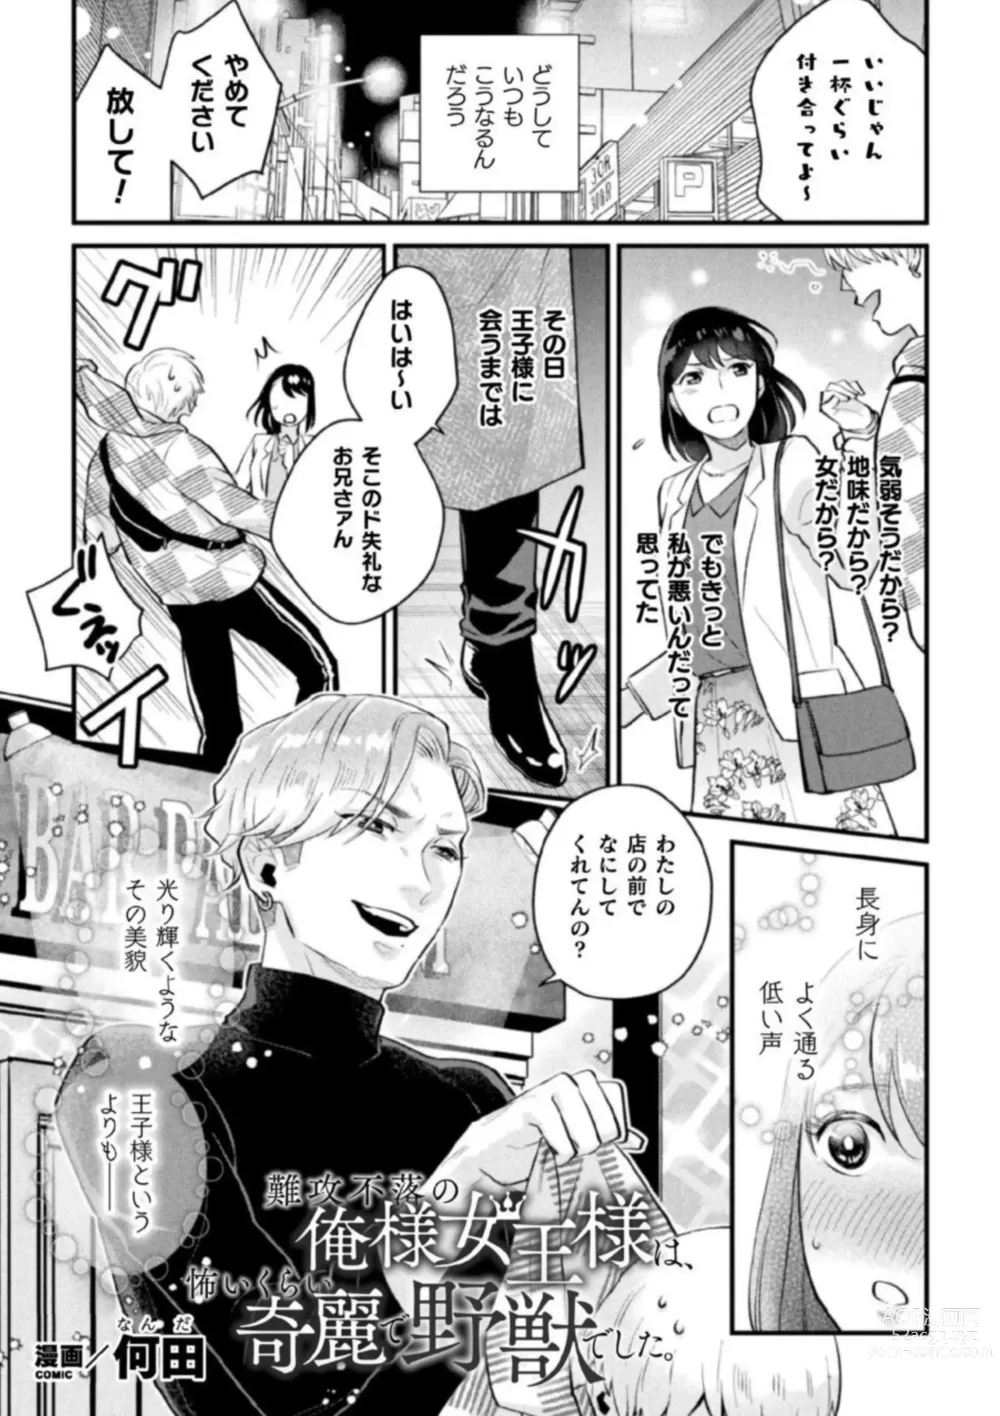 Page 3 of manga Shokora Shukureansorojīshokorashukureansorojī Docchi ga Suki? Kireina o Nīsan ni Aisare Ecchi Vol.2